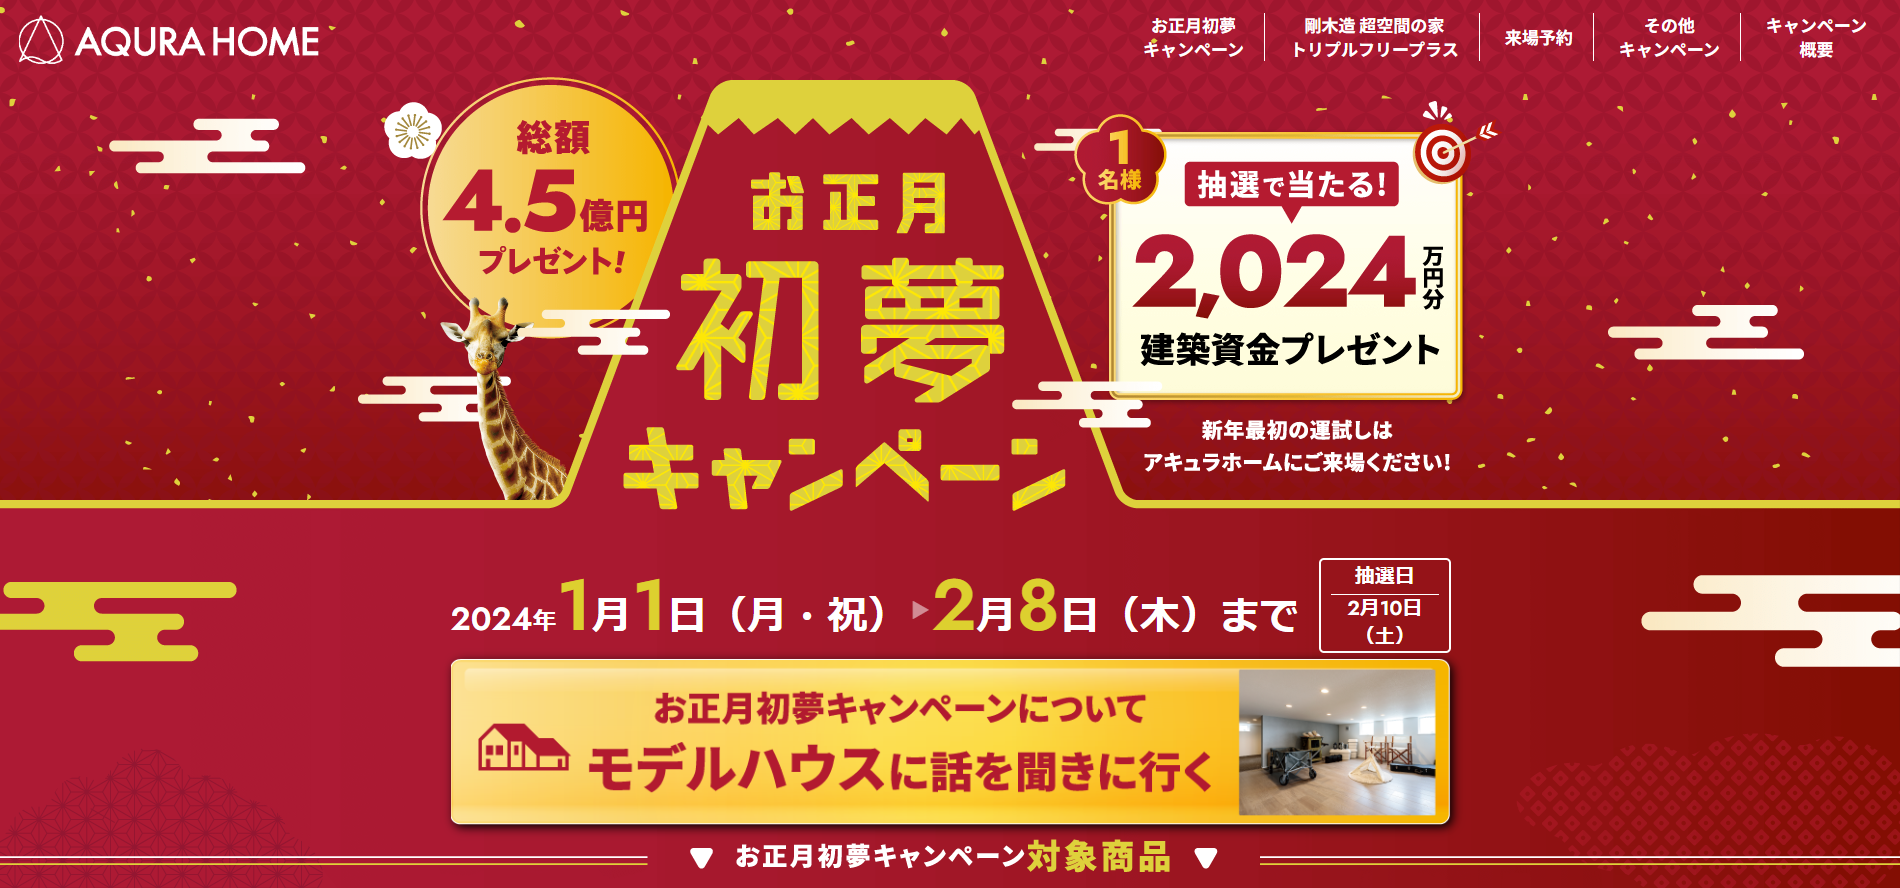 【抽選で2,024万円の建築資金プレゼント】お正月初夢キャンペーン！